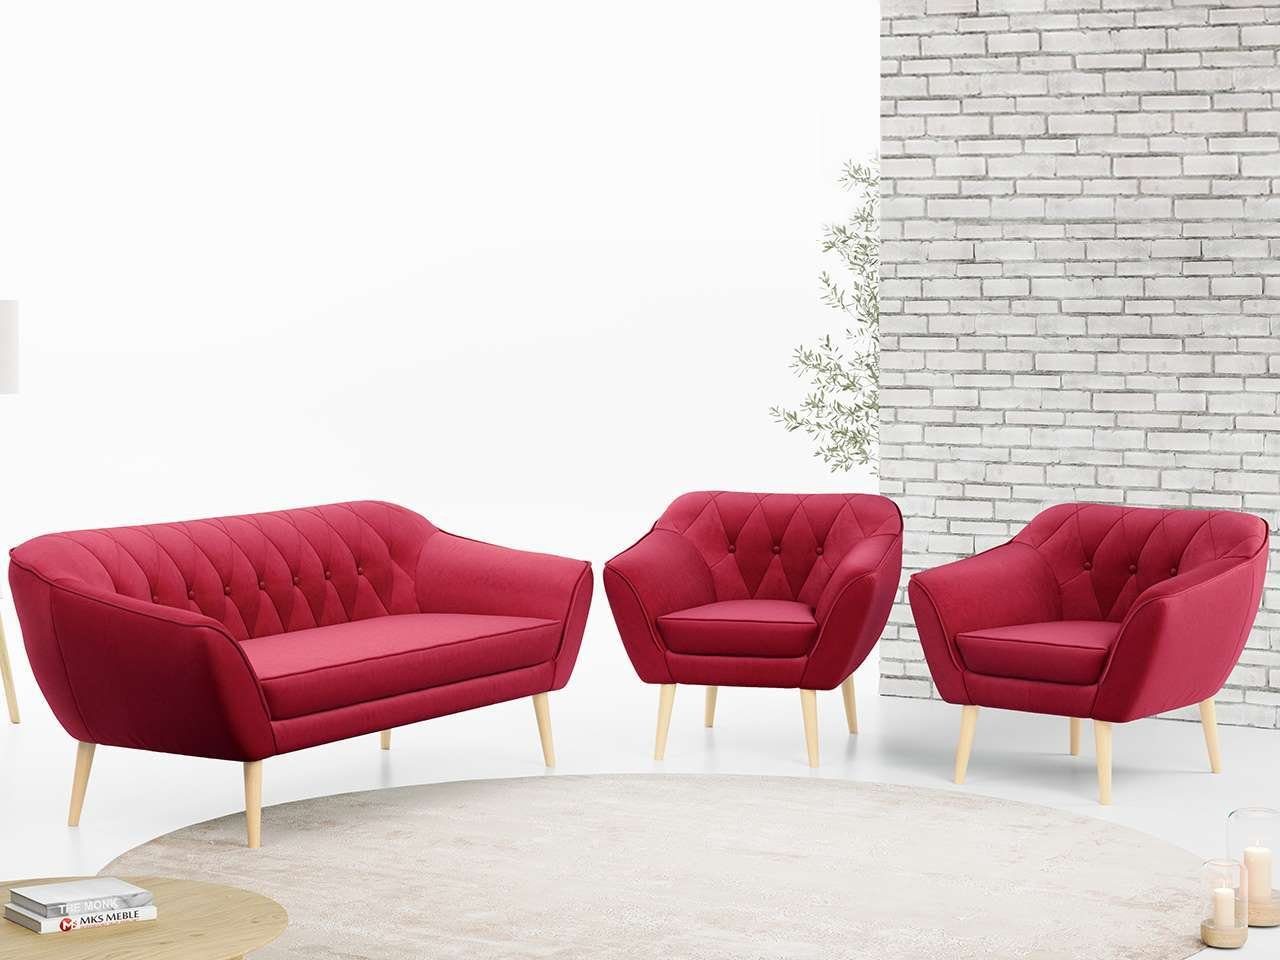 MKS MÖBEL Sofa PIRS 3 1 1, mit Relaxfunktion, Moderne Sofa Set, Skandinavische Deko Rot Casablanca